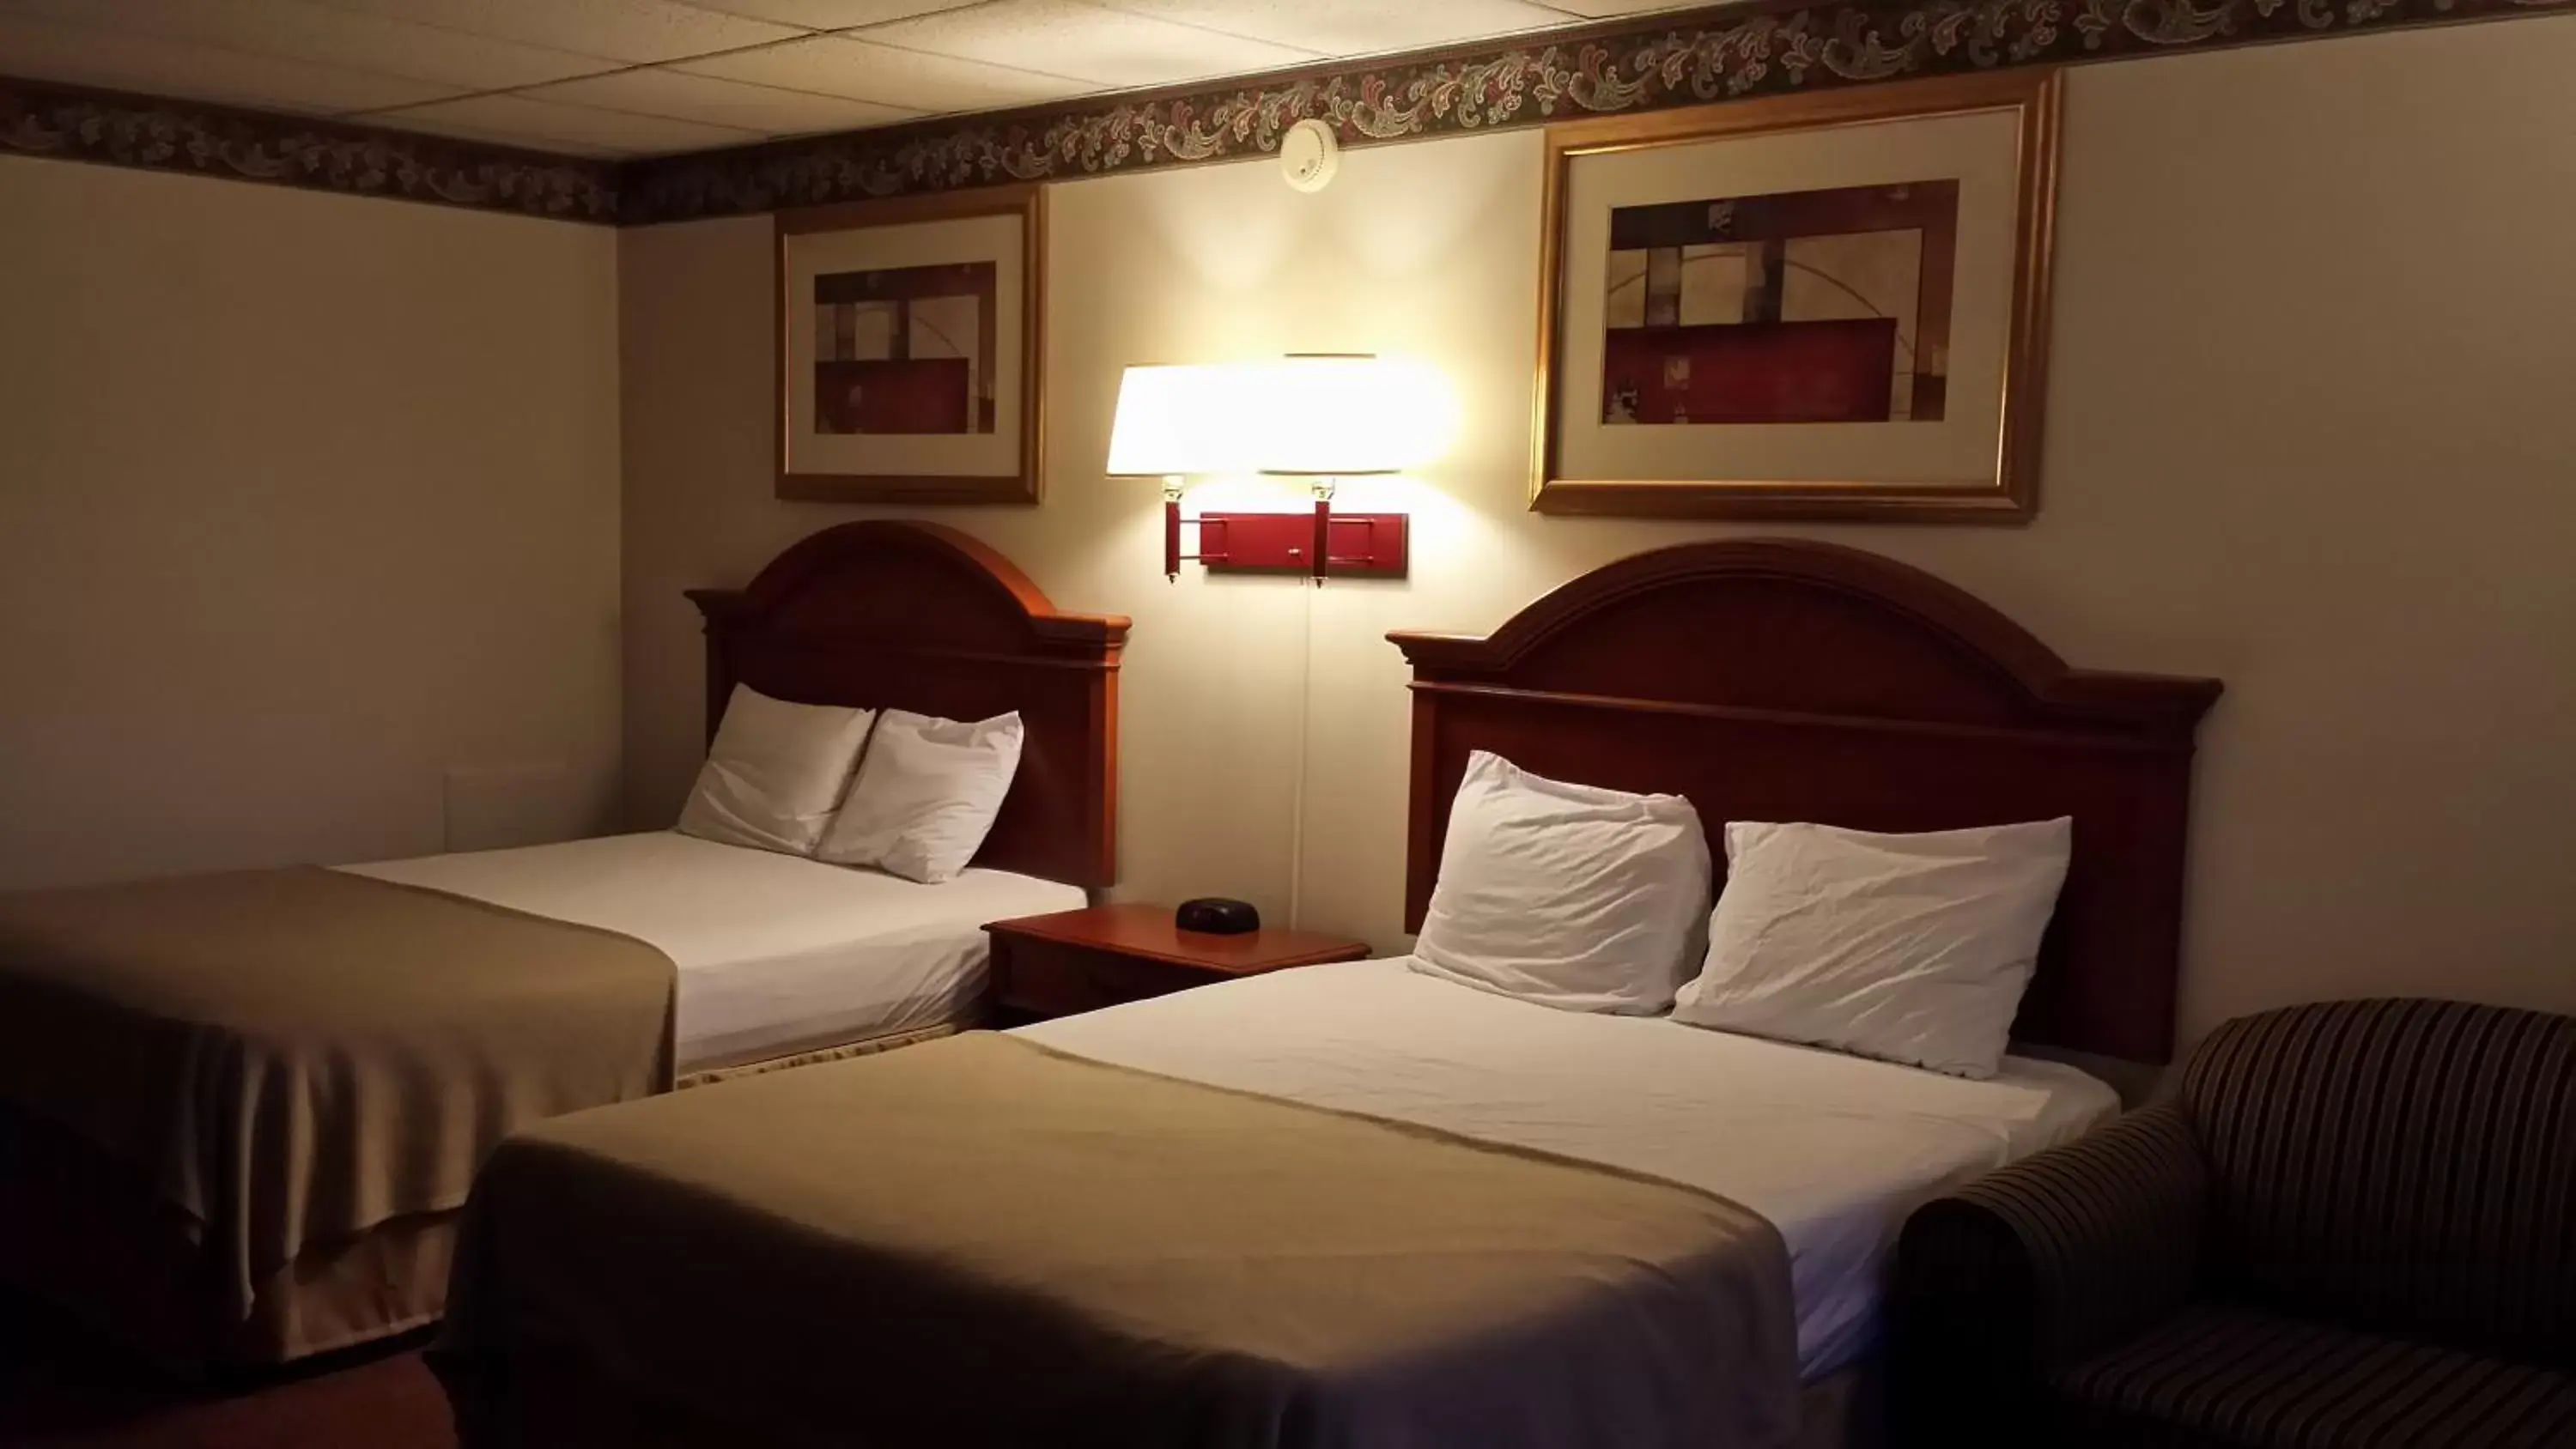 Bedroom, Bed in Americas Best Value Inn - Palmyra/Hershey